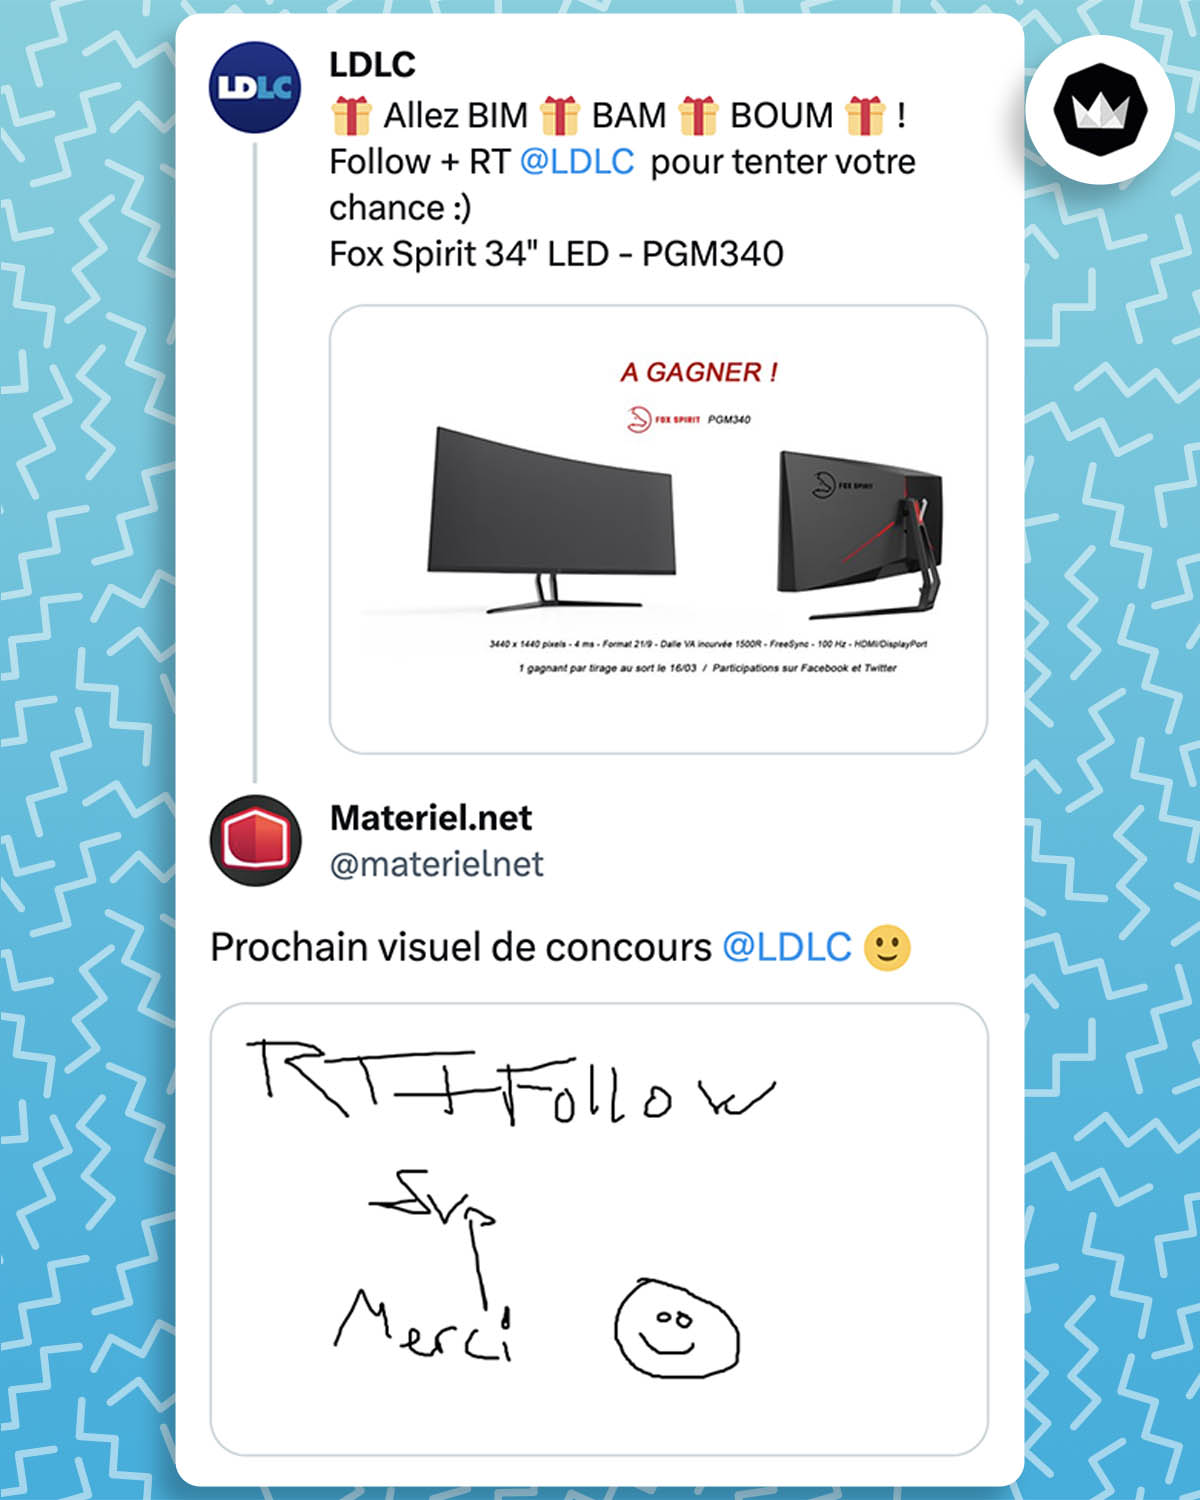 LDLC lance un concours avec un visuel du produit à gagner sur un simple fond blanc. Materiel.net répond : "prochain visuel de concours LDLC" avec un visuel écrit à la main comme si l'auteur avait 5 ans "RT + Follow, svp merci".